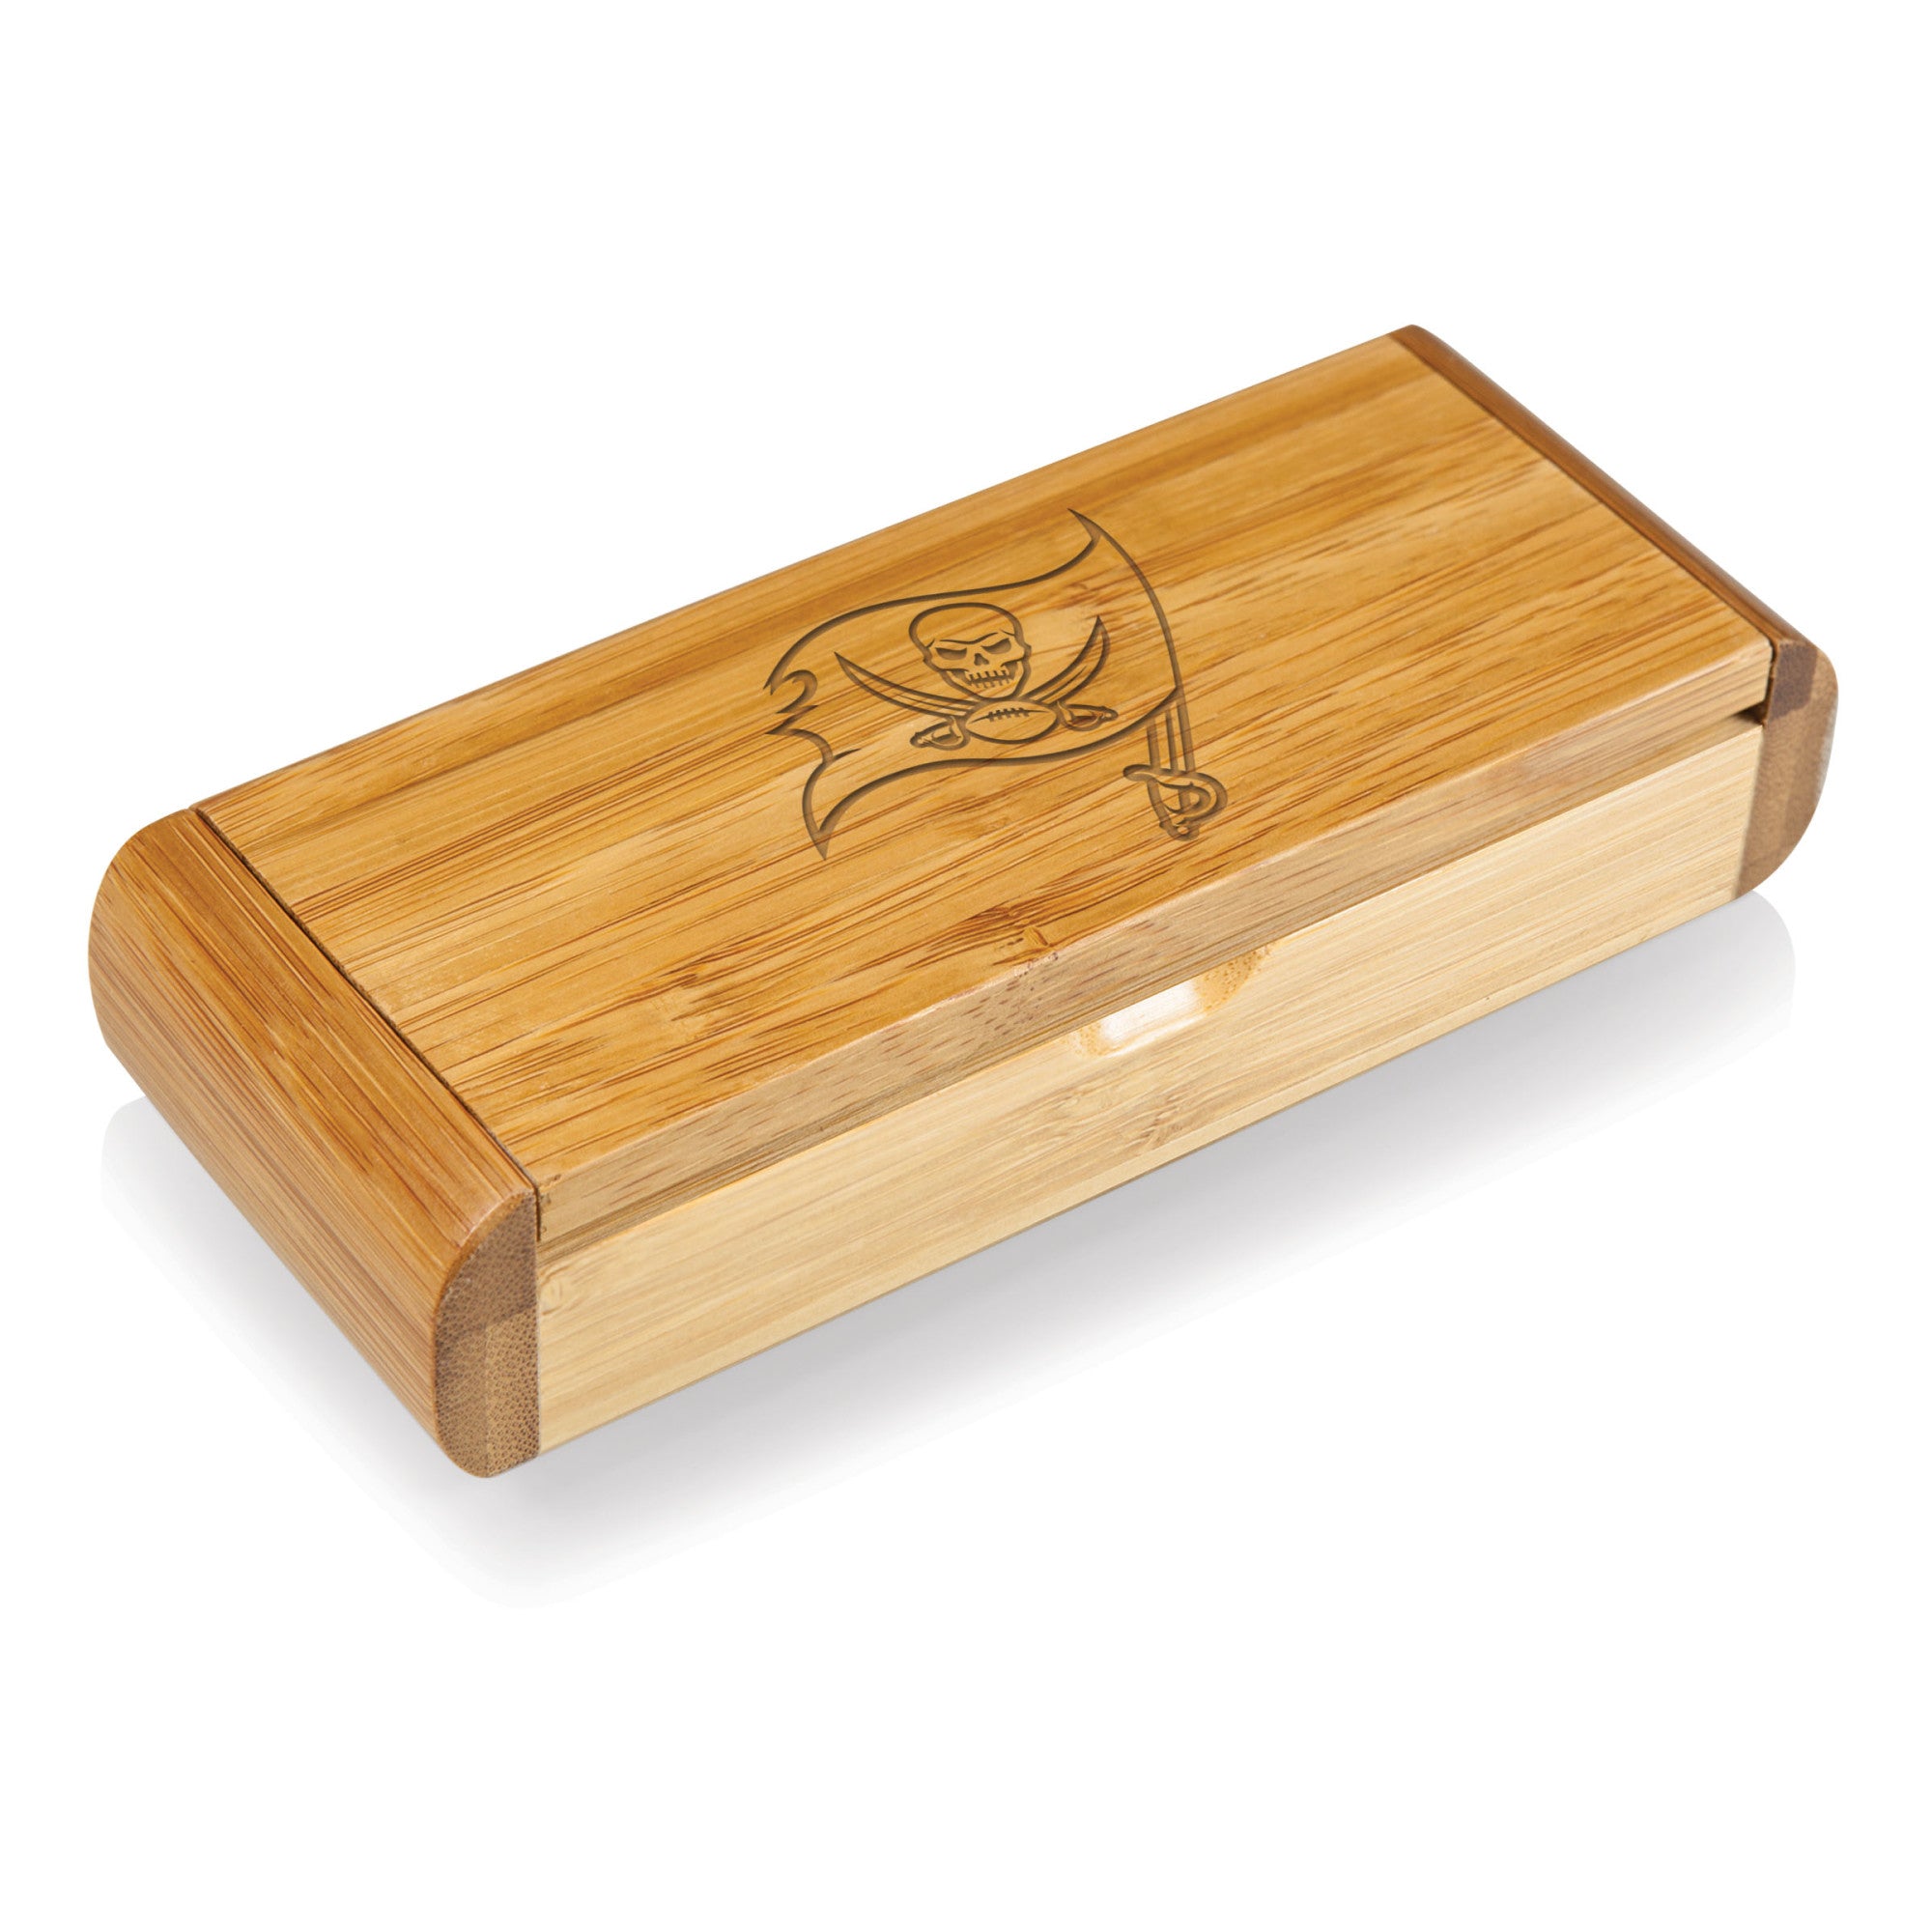 Tampa Bay Buccaneers - Elan Deluxe Corkscrew In Bamboo Box